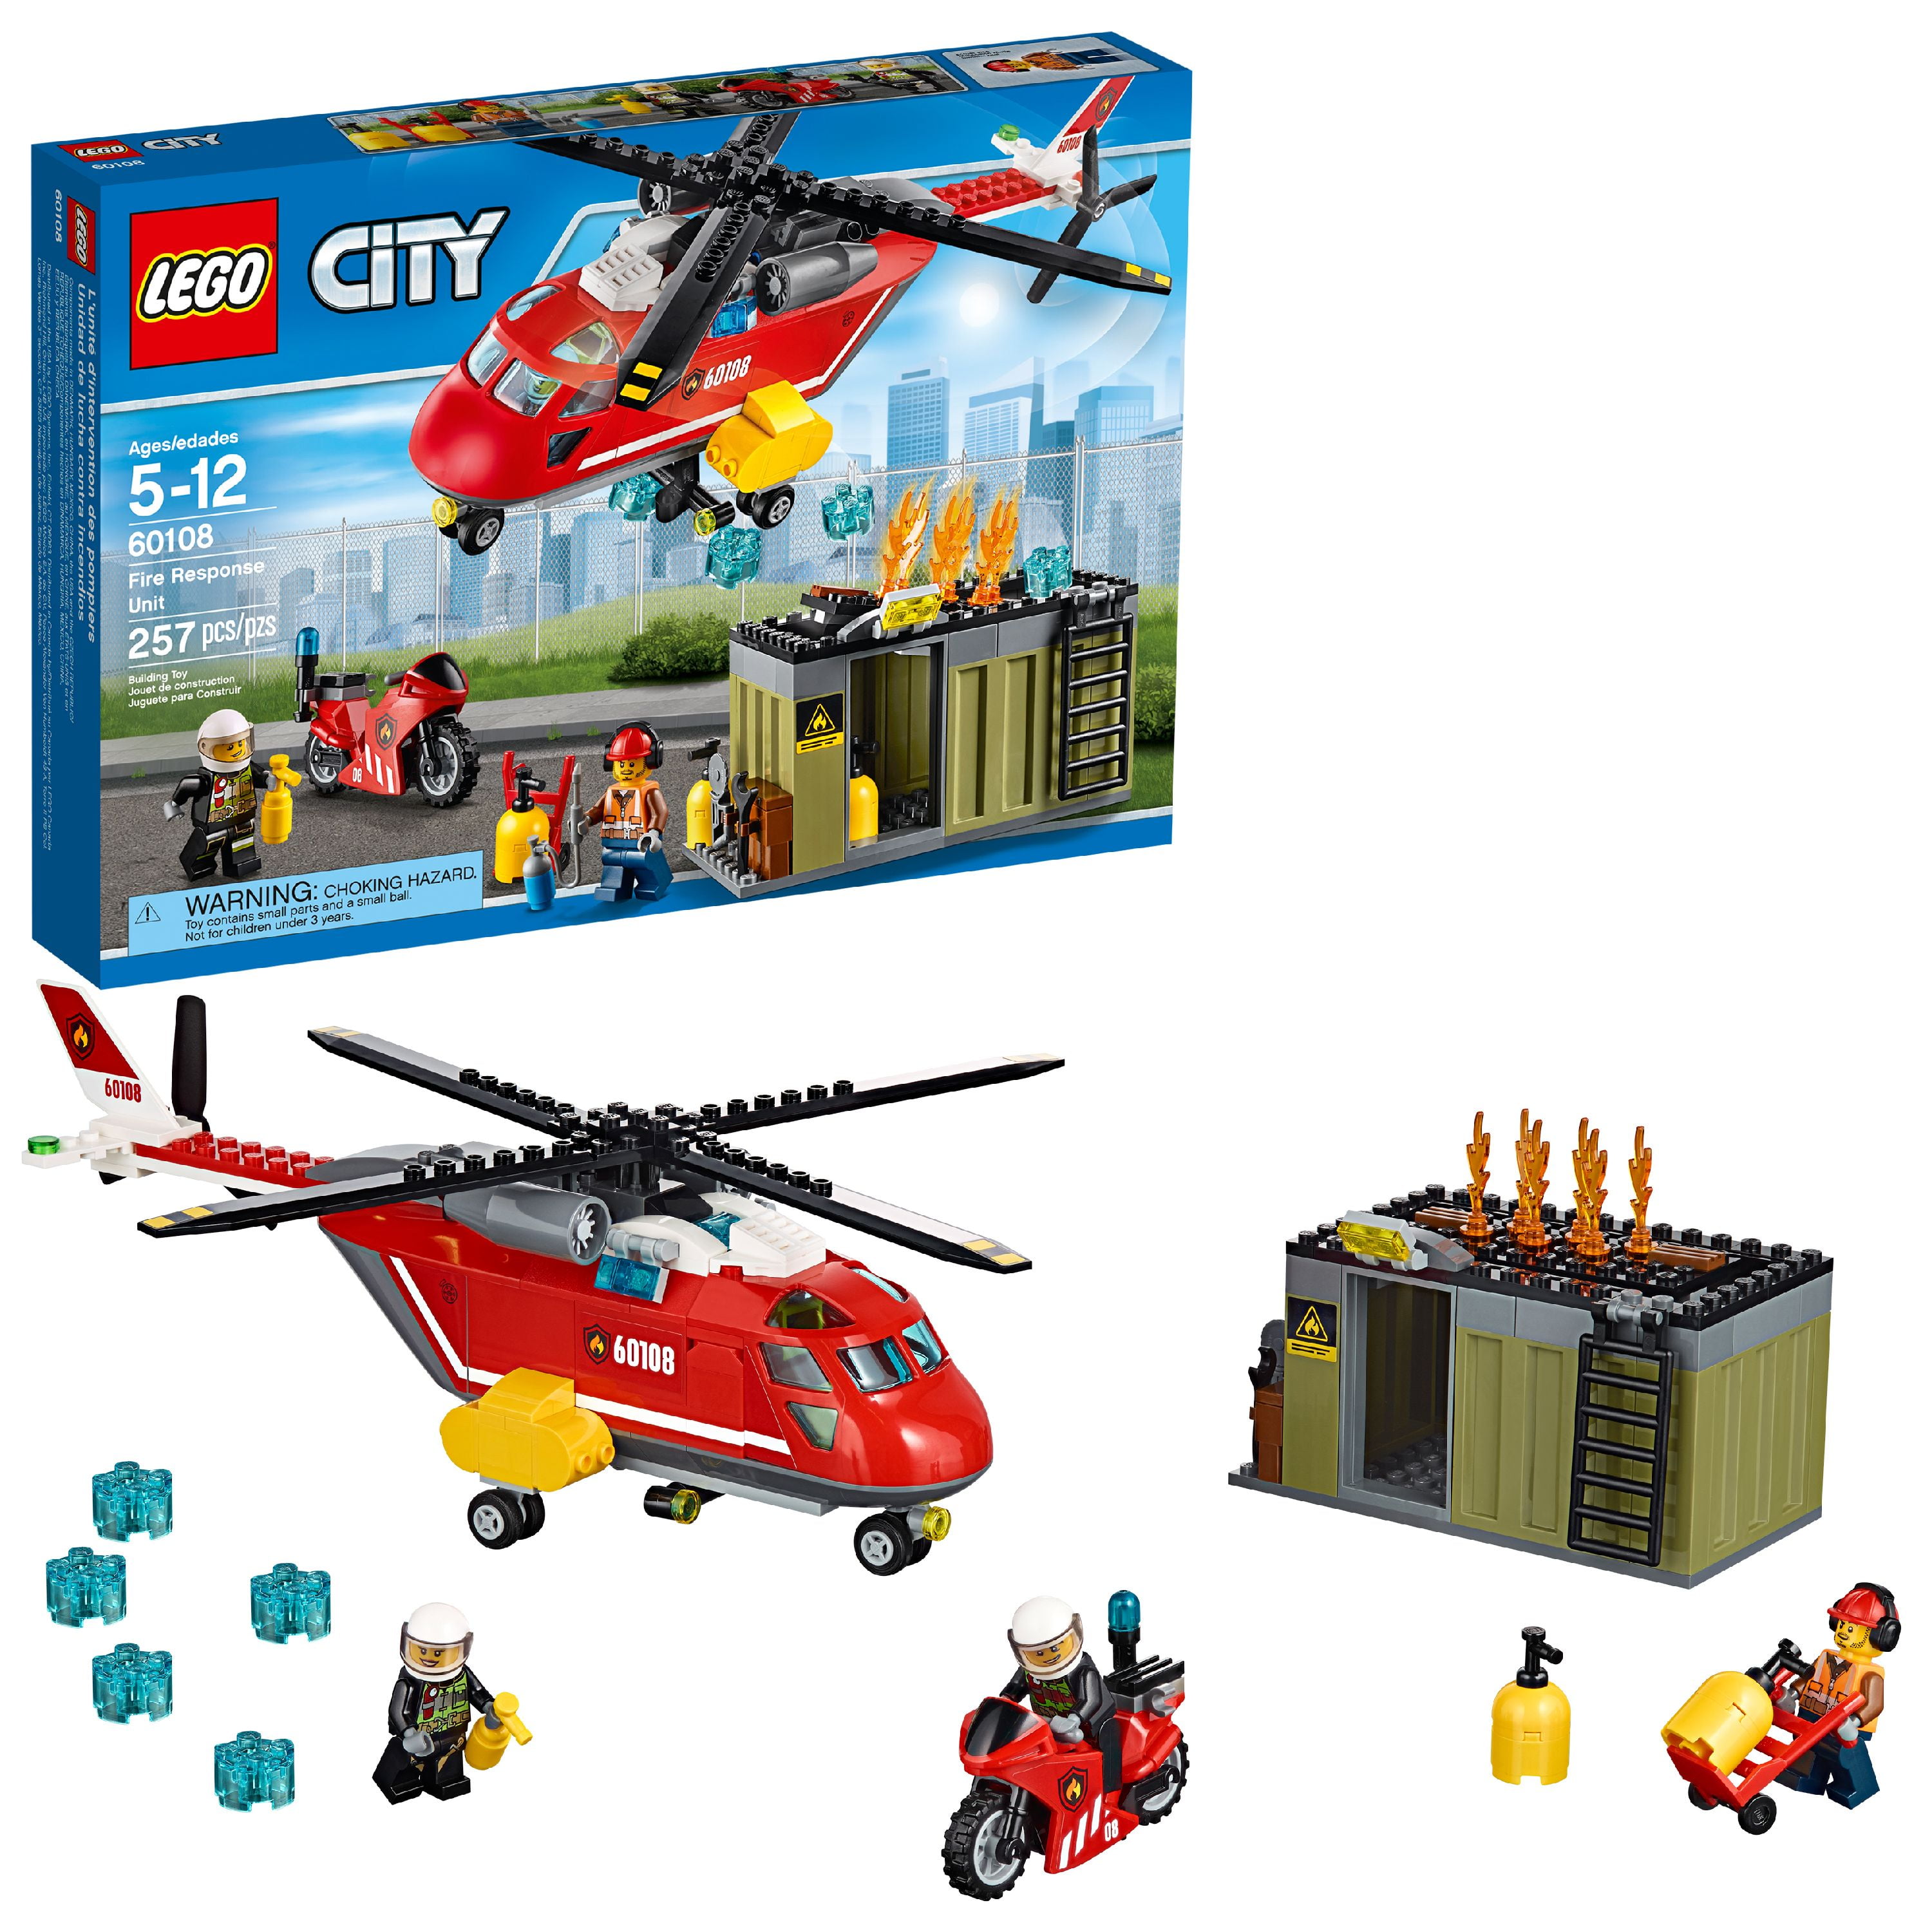 Fire Response Unit 60108 - LEGO® City Sets - LEGO.com for kids